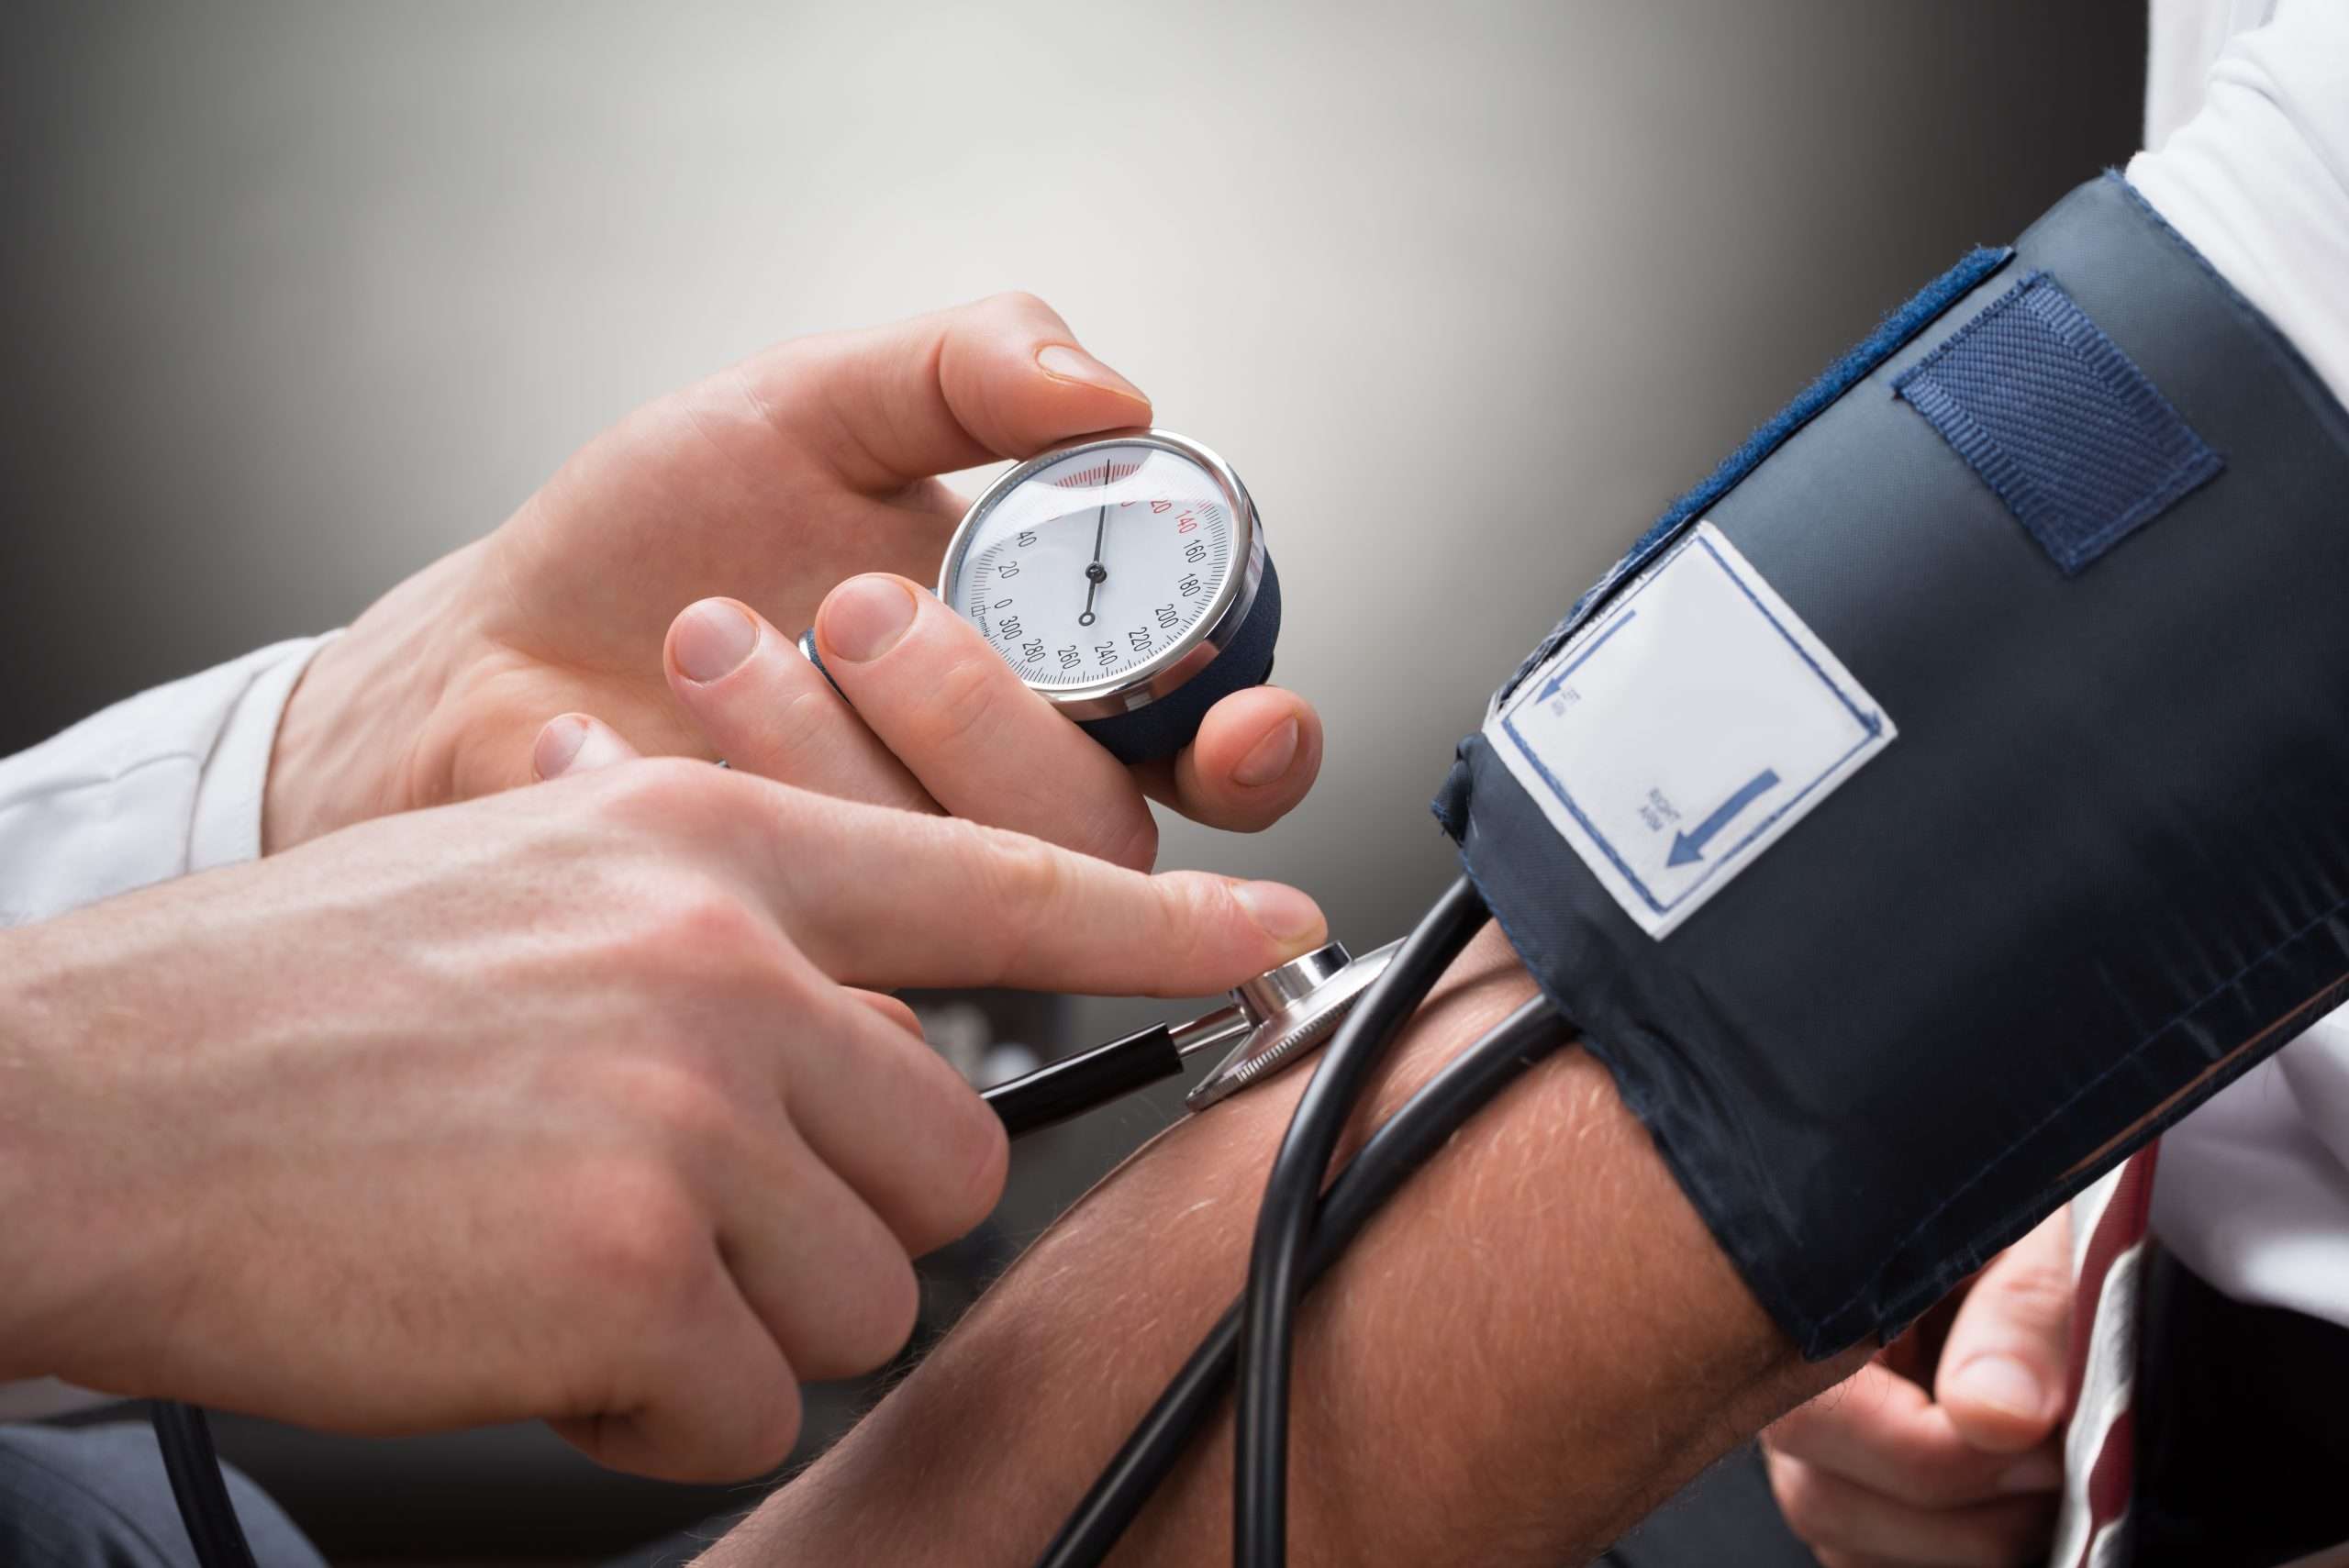 Blood Pressure Causes Kidney Disease in Type